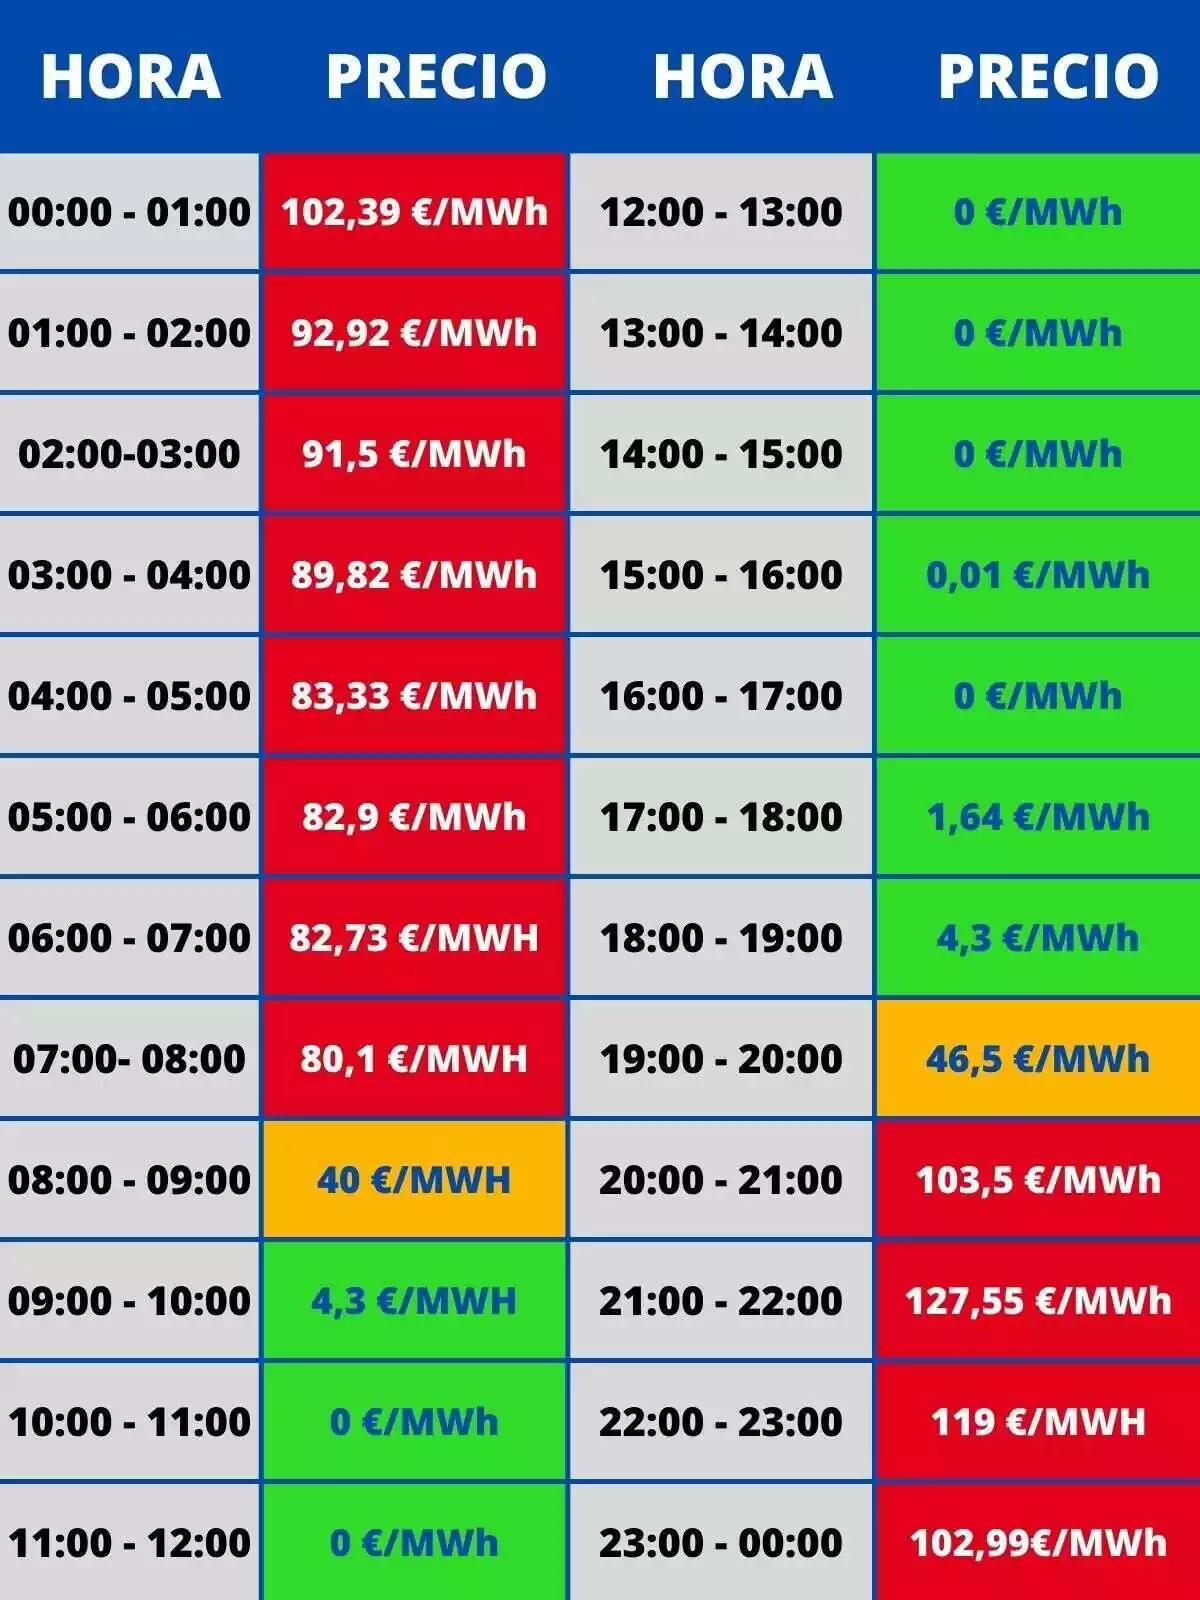 Tabla mostrando los precios de luz de todas las horas del 27 de agosto